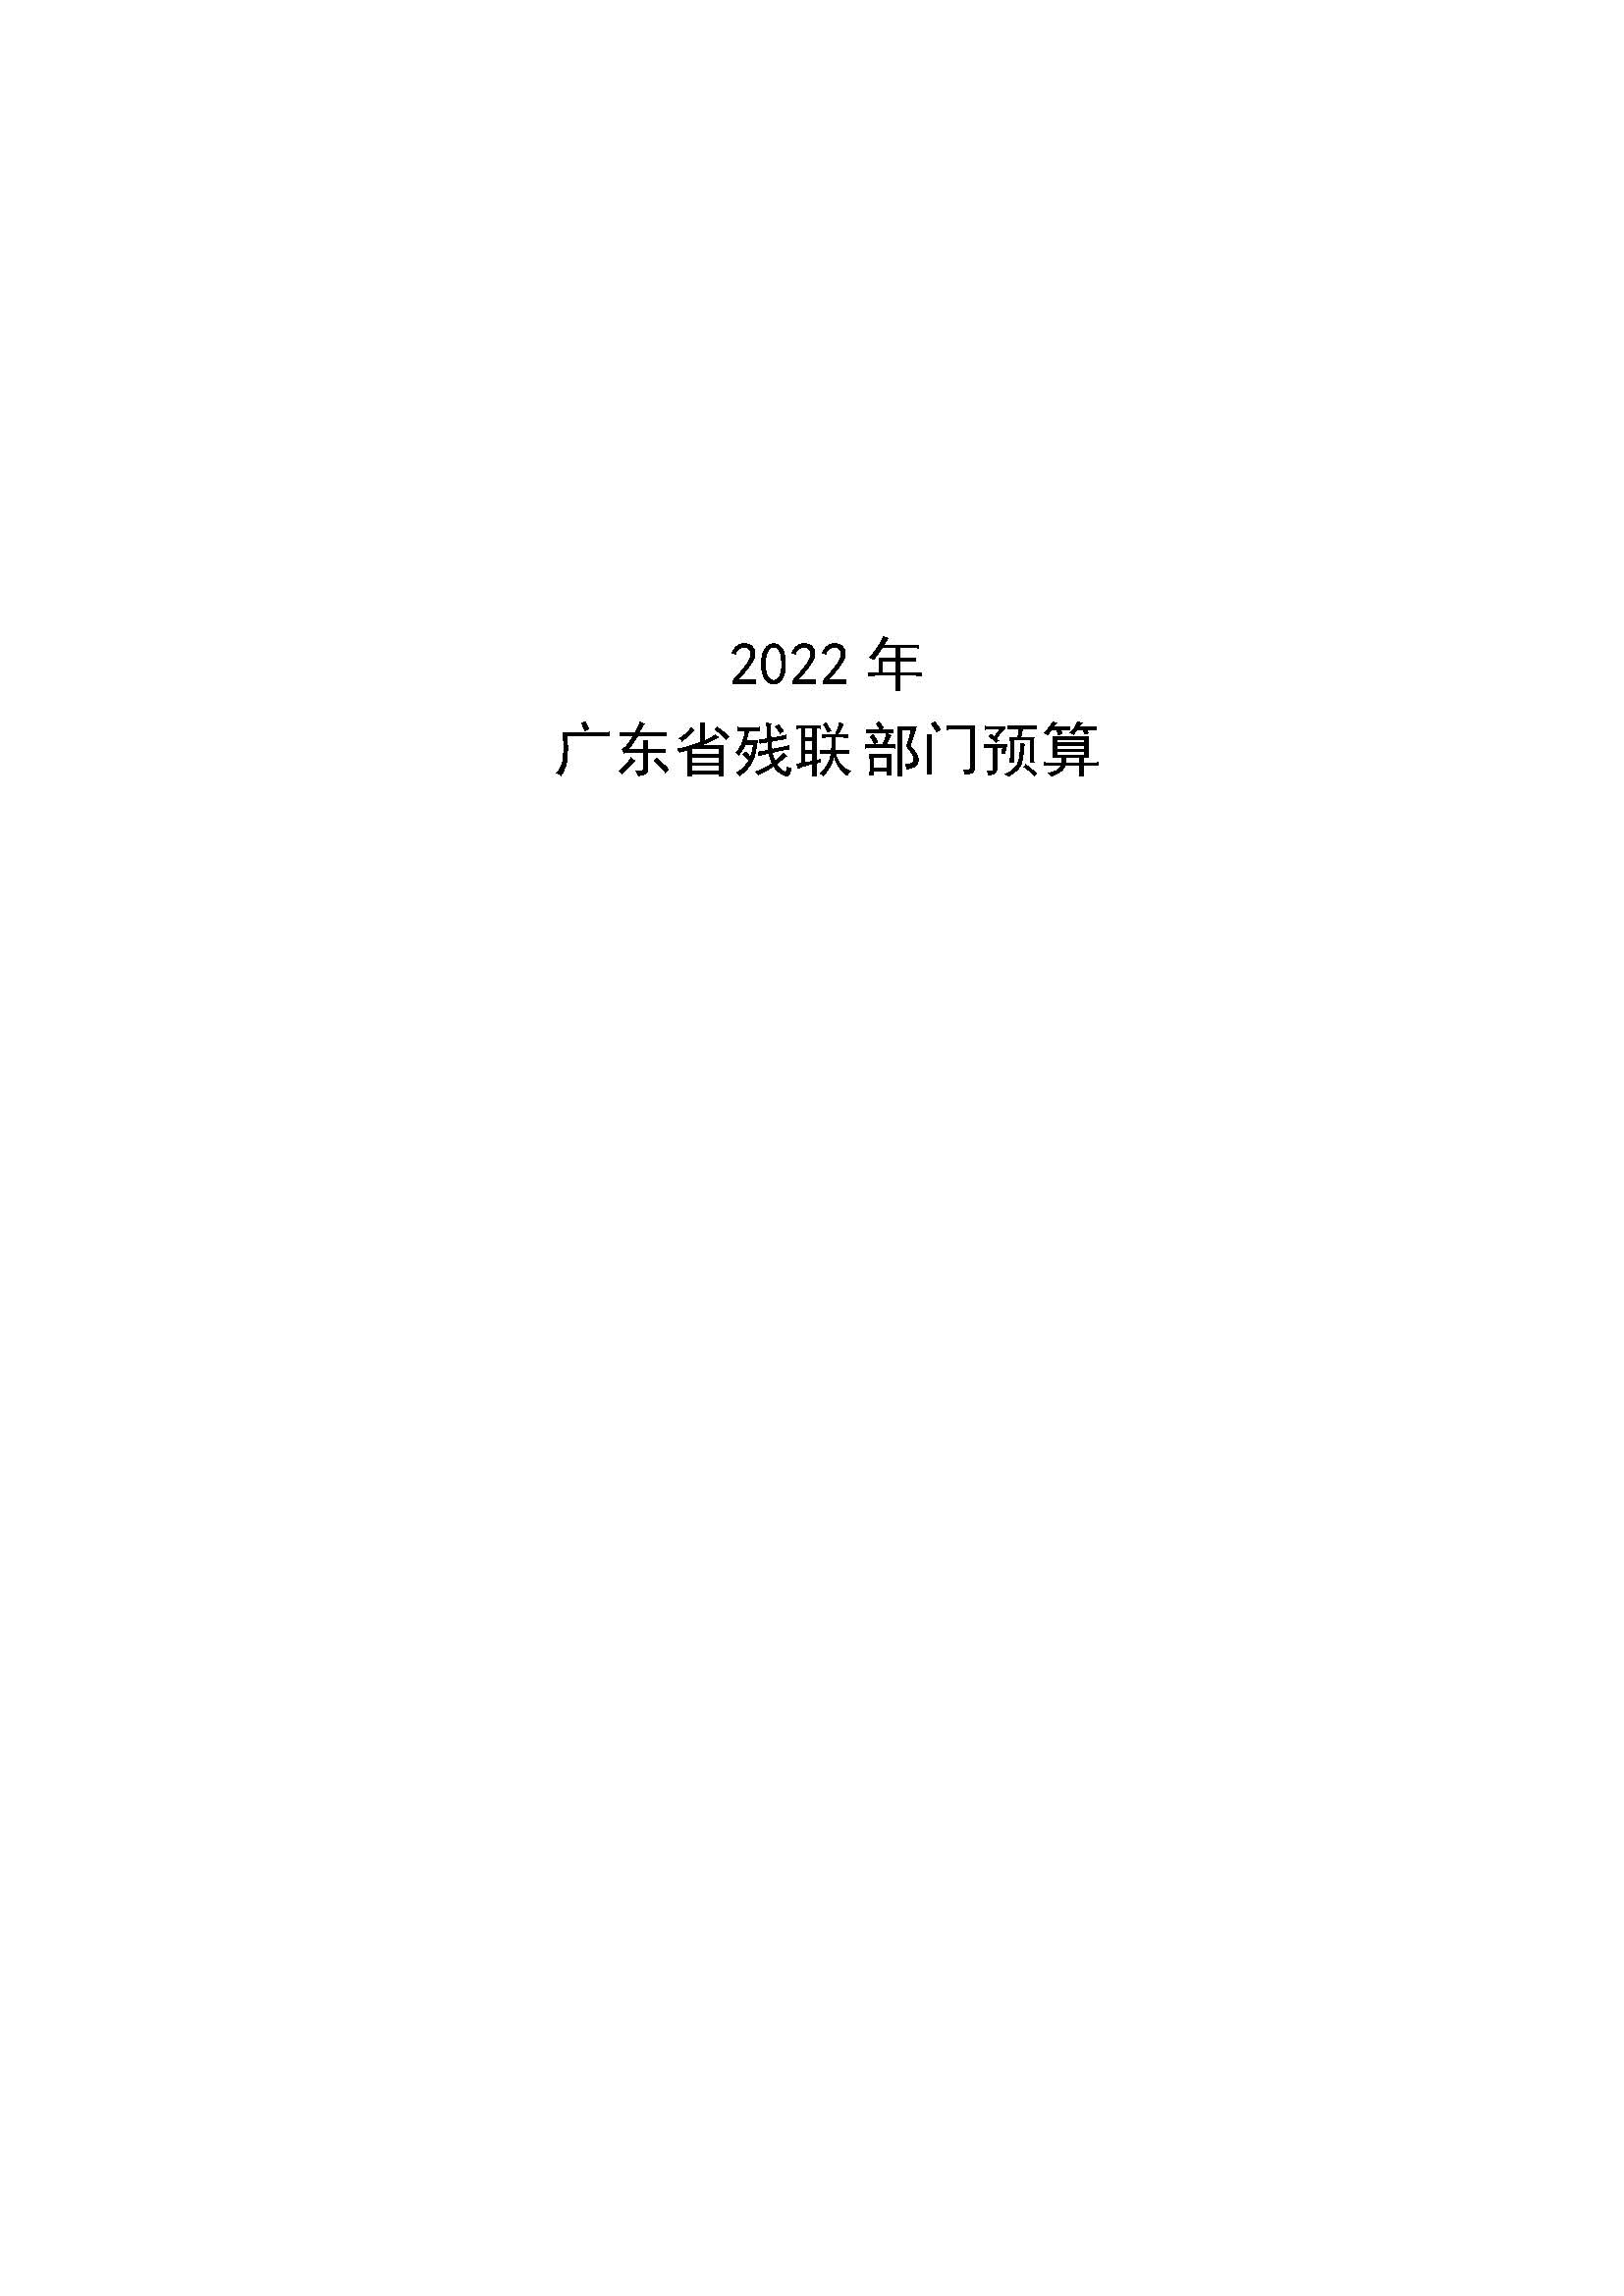 页面提取自－2022年179部门预算_页面_1.jpg